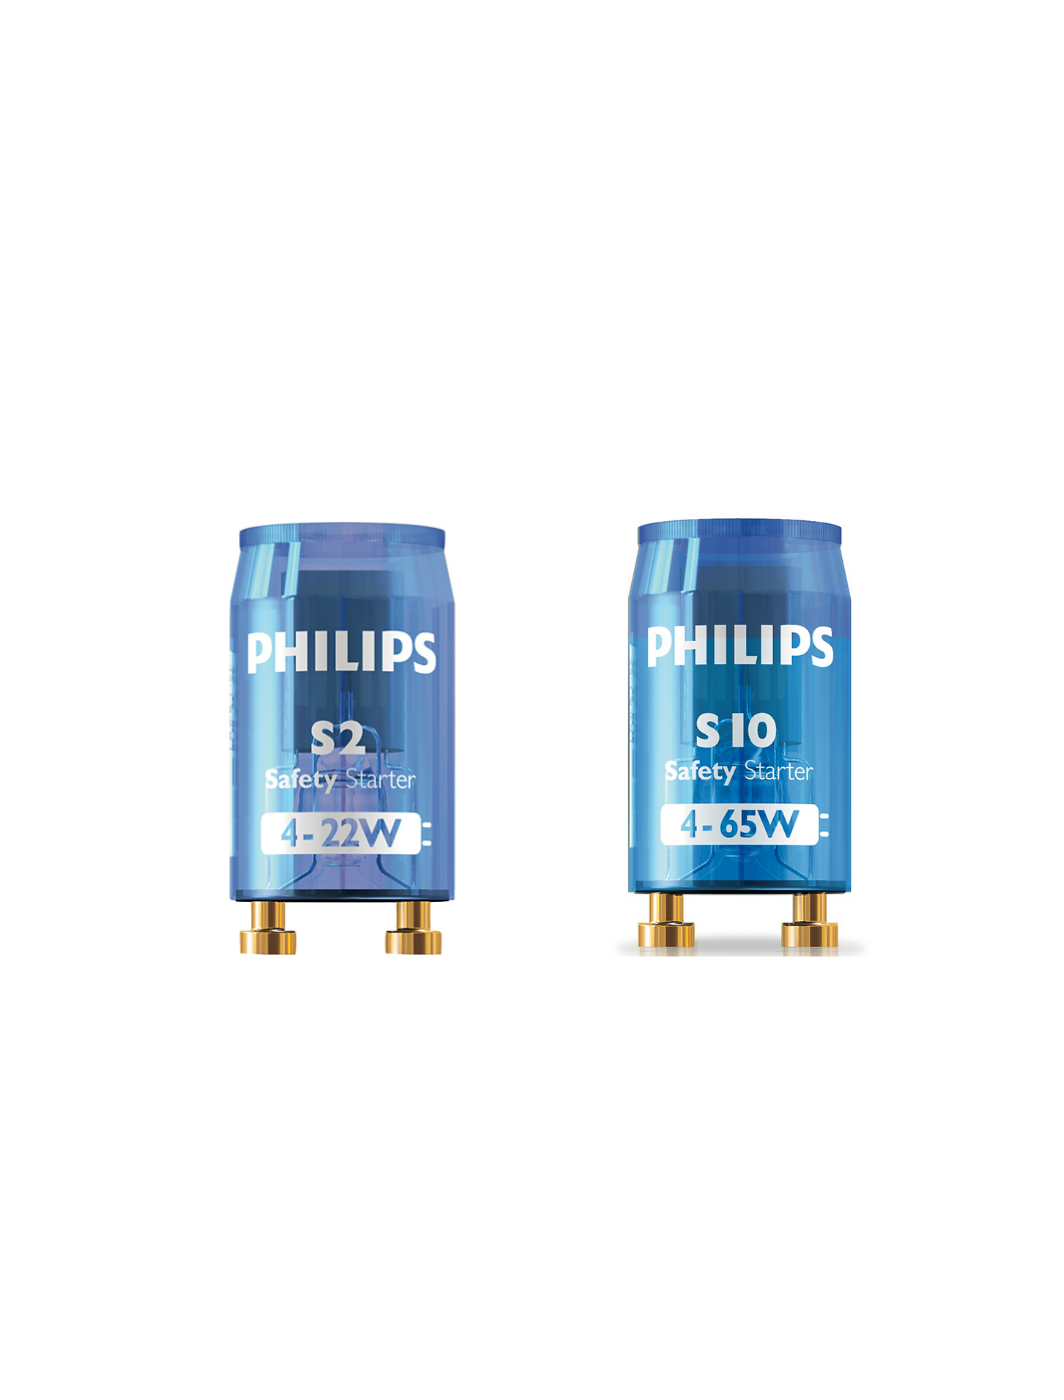 PHILIPS S2 S10 Fluorescent Safety Starter – SLW Lighting